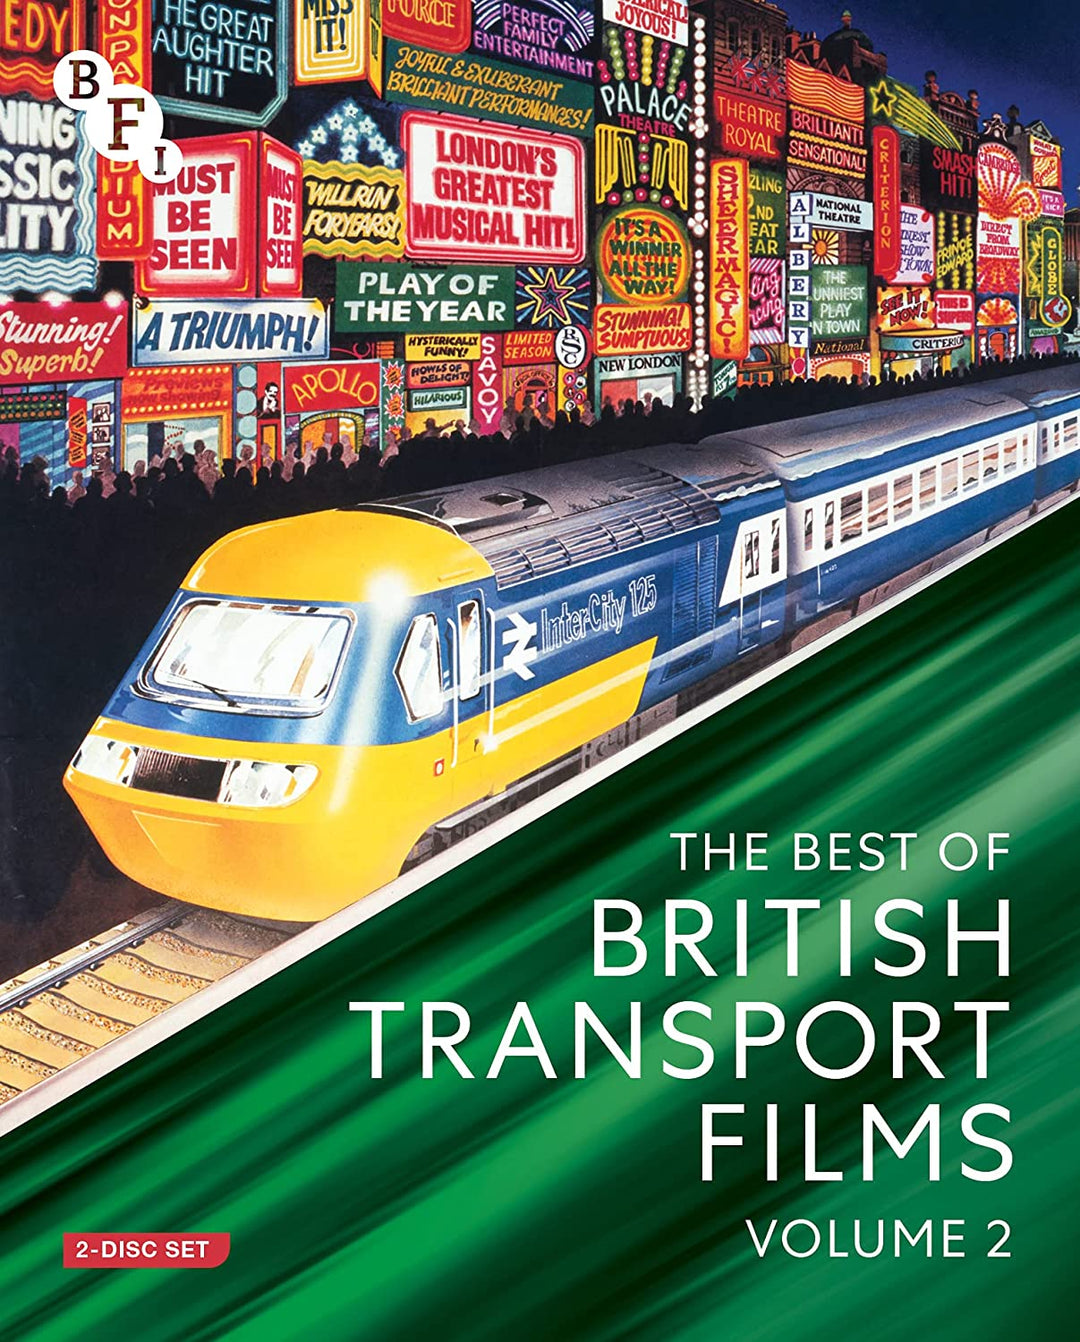 Das Beste aus britischen Transportfilmen Band 2 (2 Discs) [Blu-ray]